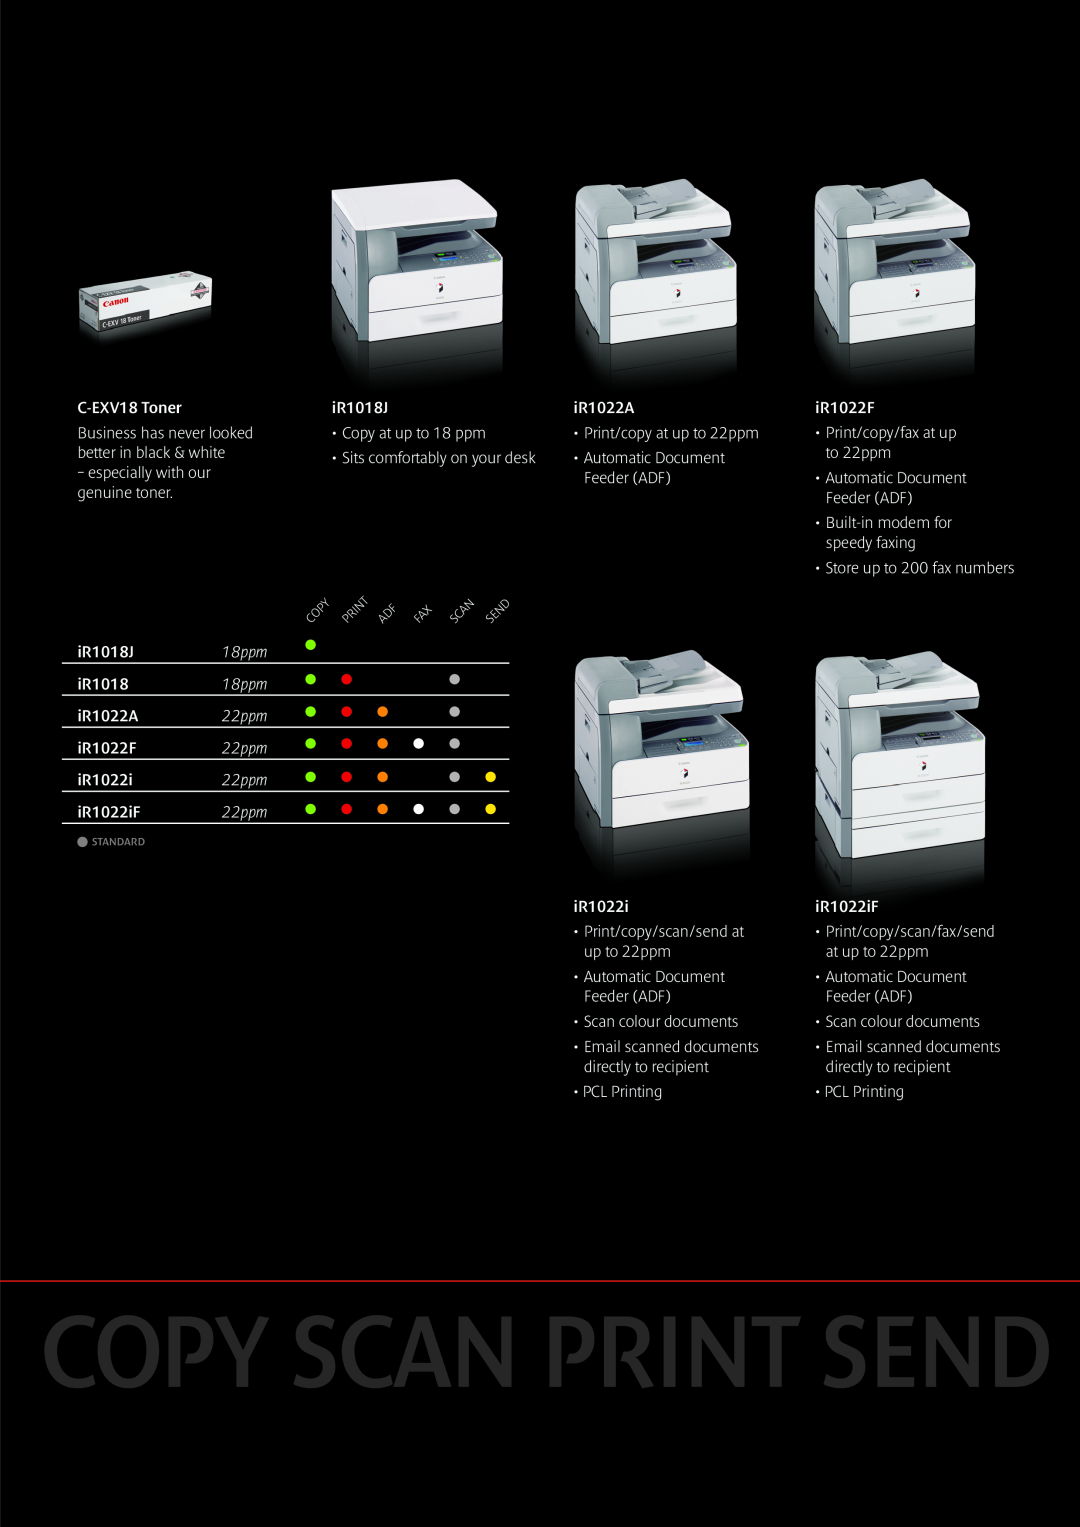 Canon iR2018/i, IR1018J, iR2030/i, iR1022i, IR1022iF, iR1022F, iR2018/2030, iR1018/1022 18ppm, 22ppm, Copy Scan Print Send 